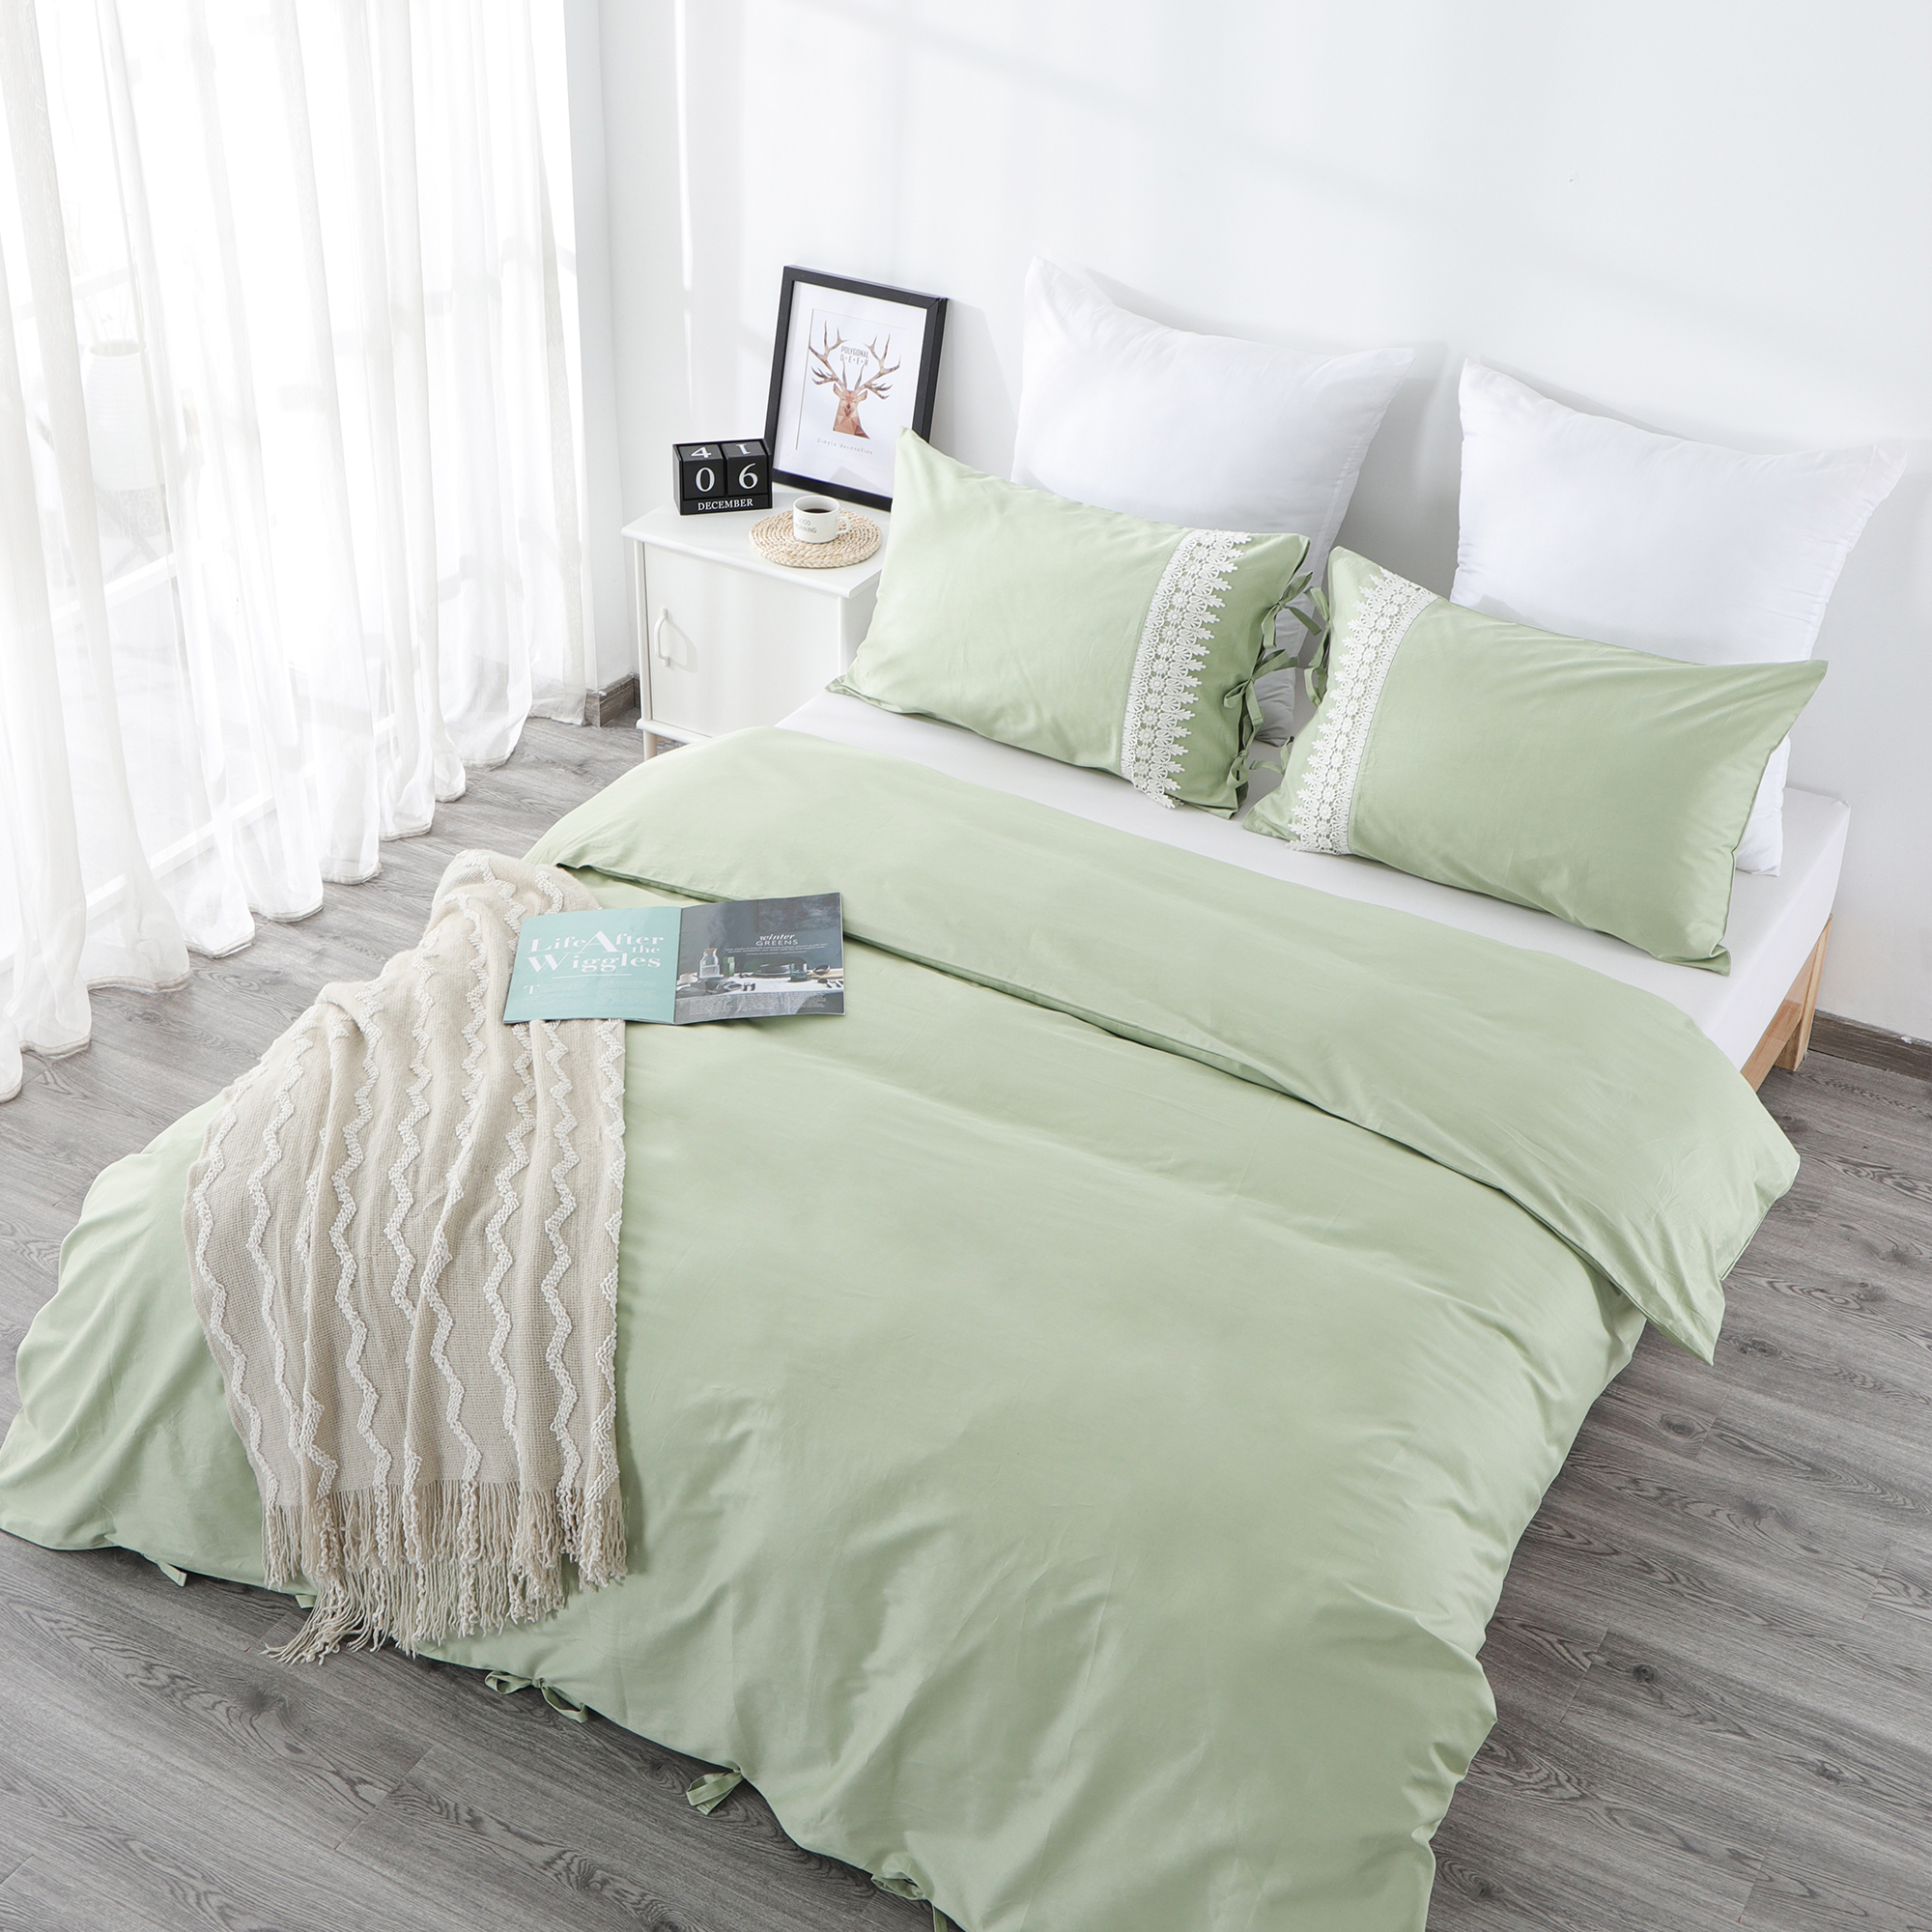  RKSB-0283 Elegant Lace Decoration Design 100% Cotton Duvet Cover Set Bed Sheet Flat Sheet